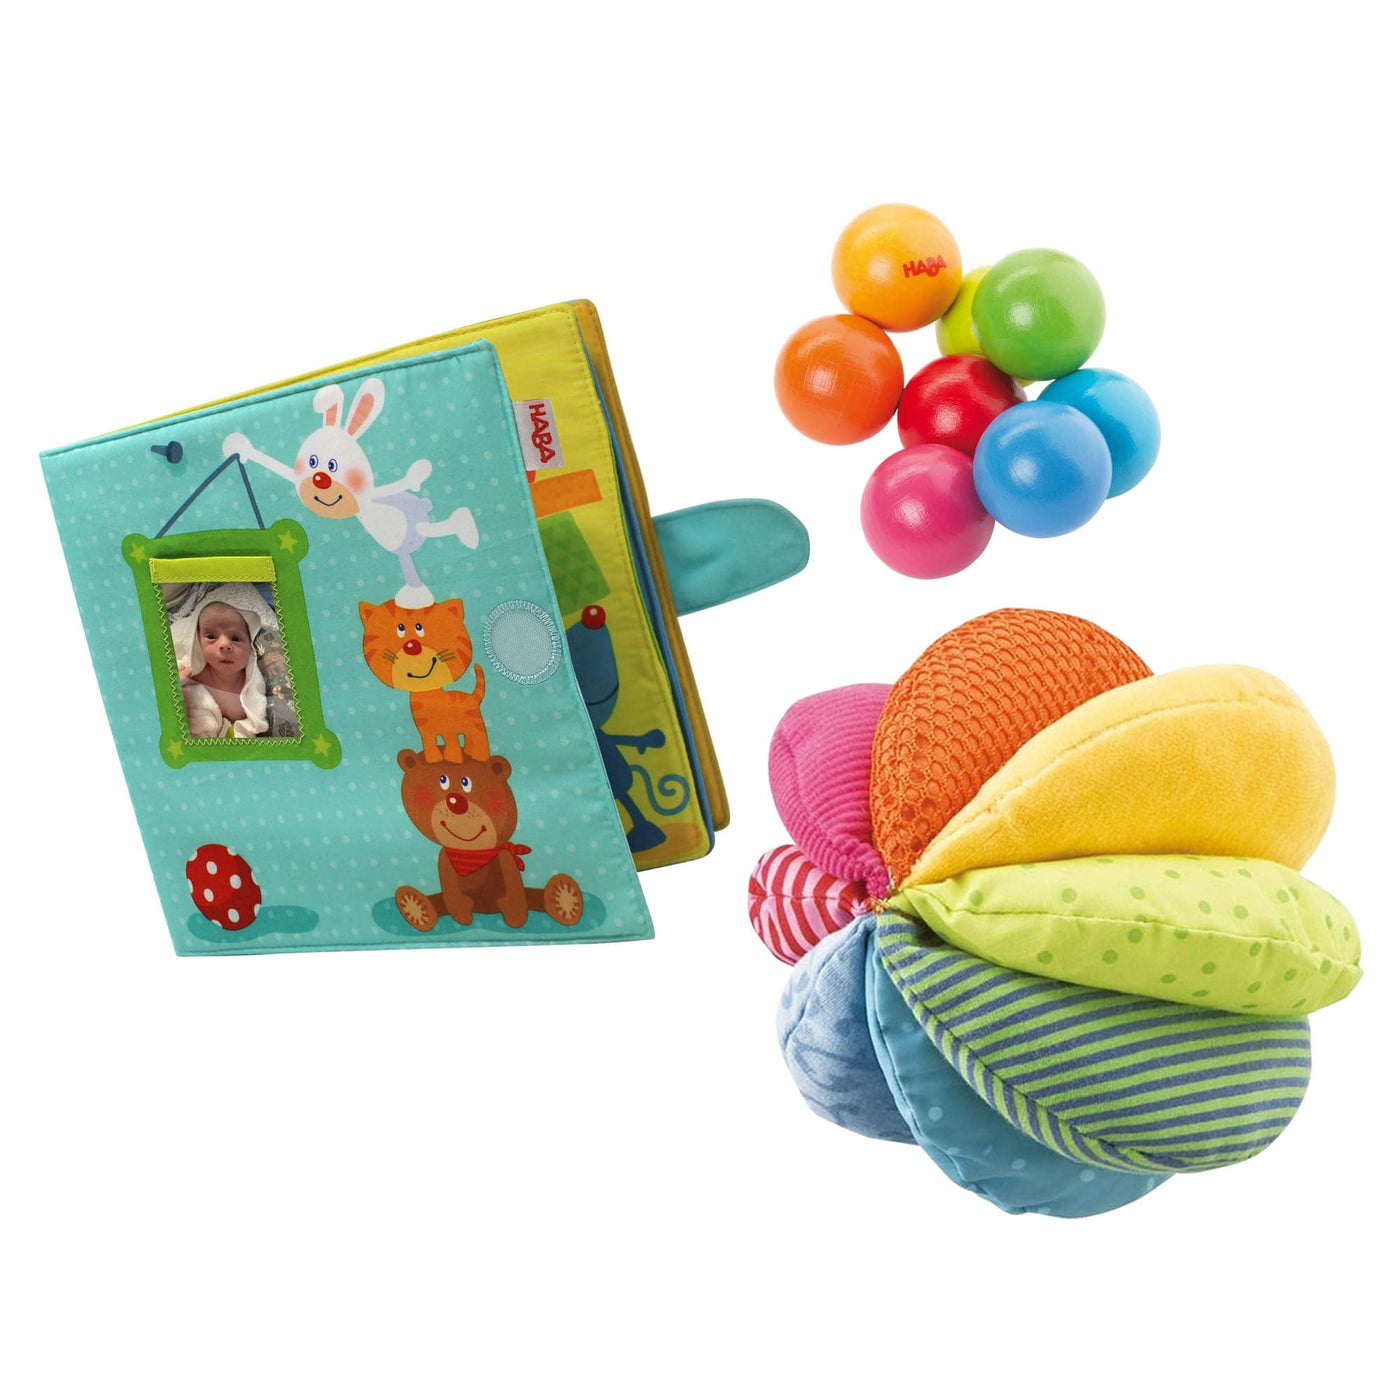 Baby Toys Gift Set Bundle - HABA USA